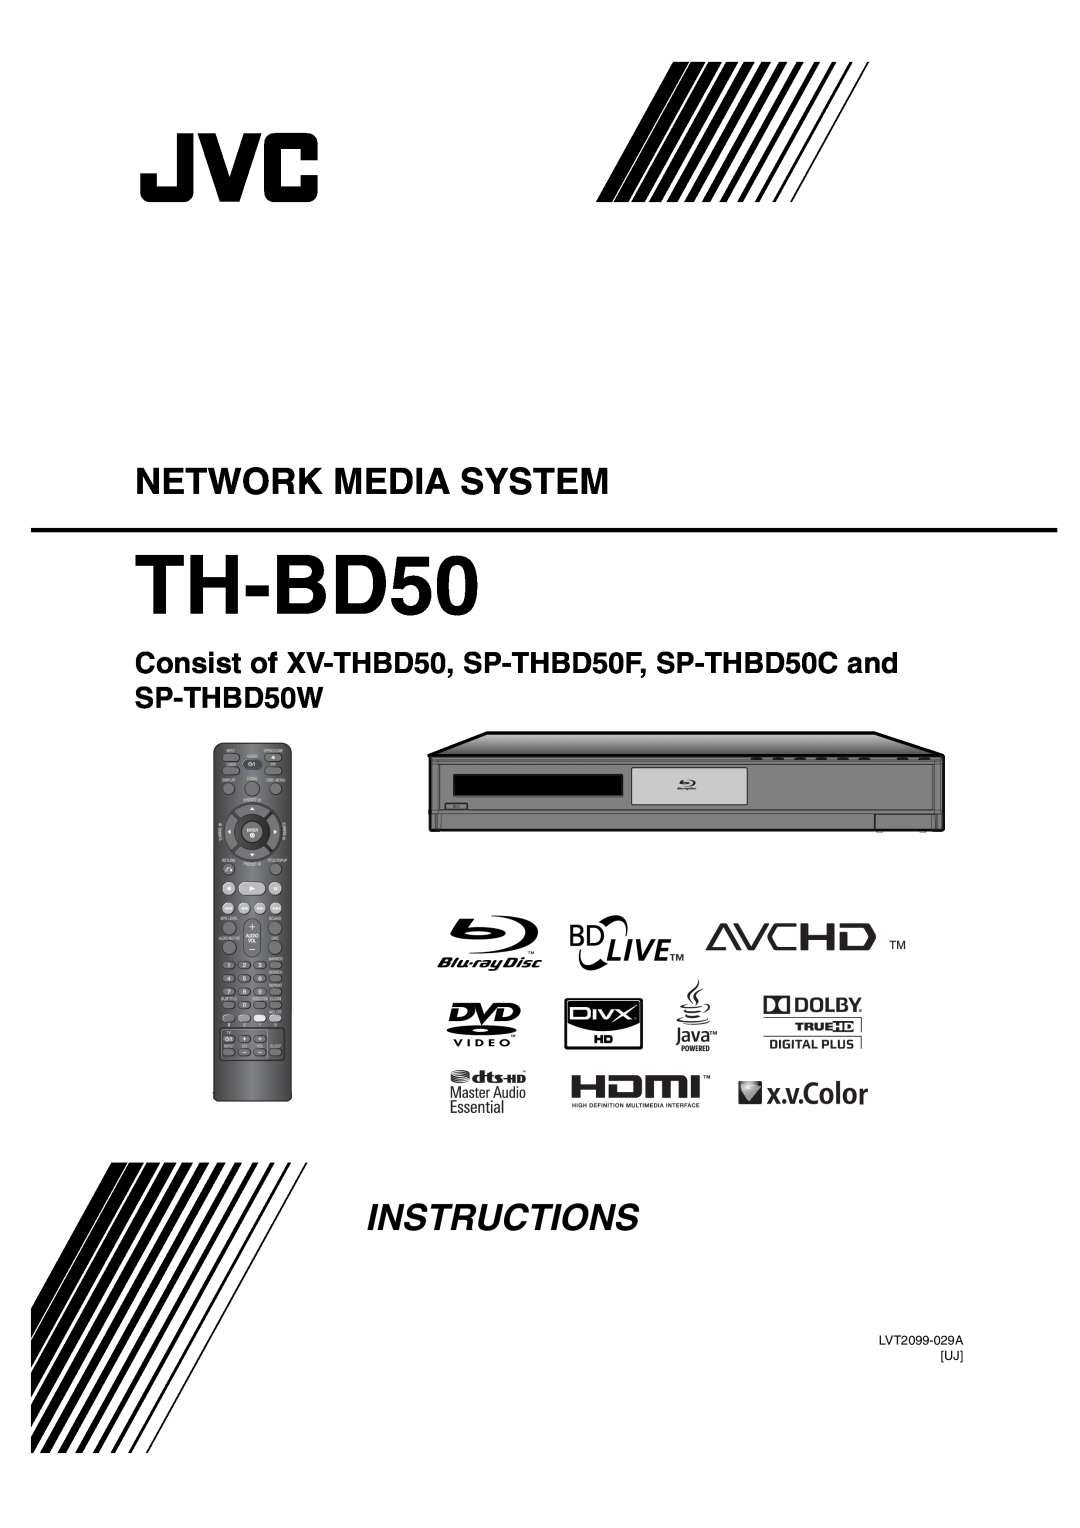 JVC SP-THBD50W, SP-THBD50F, SP-THBD50C, XV-THBD50 manual Network Media System, TH-BD50, Instructions, LVT2099-029AUJ 